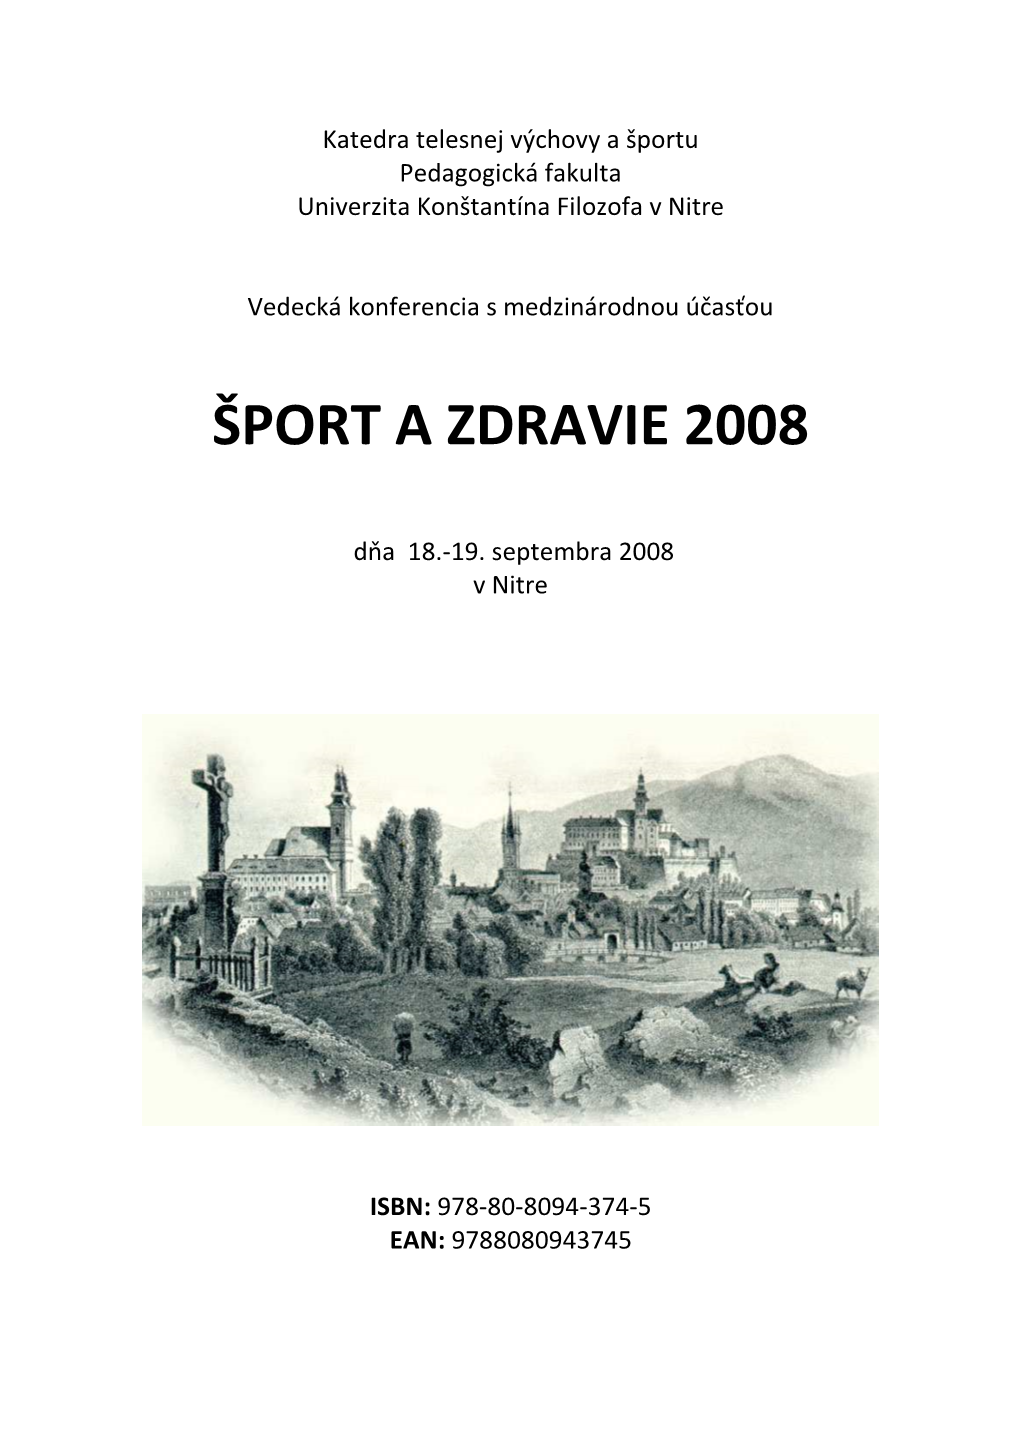 ŠPORT a ZDRAVIE 2008 -.::E-Learn KTVŠ UKF Nitra